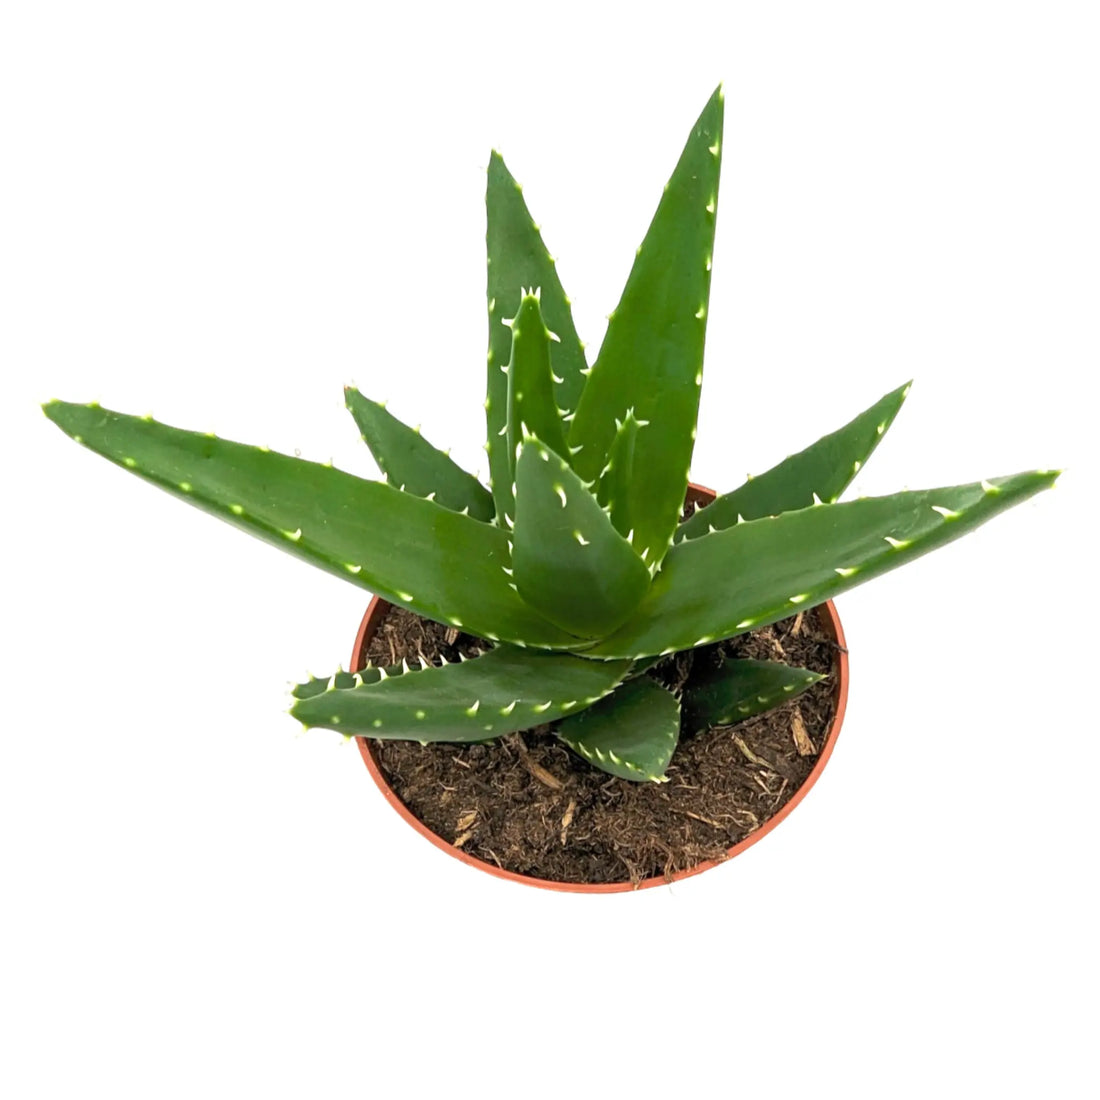 Aloe Perfolia - Rubble Aloe Leaf Culture